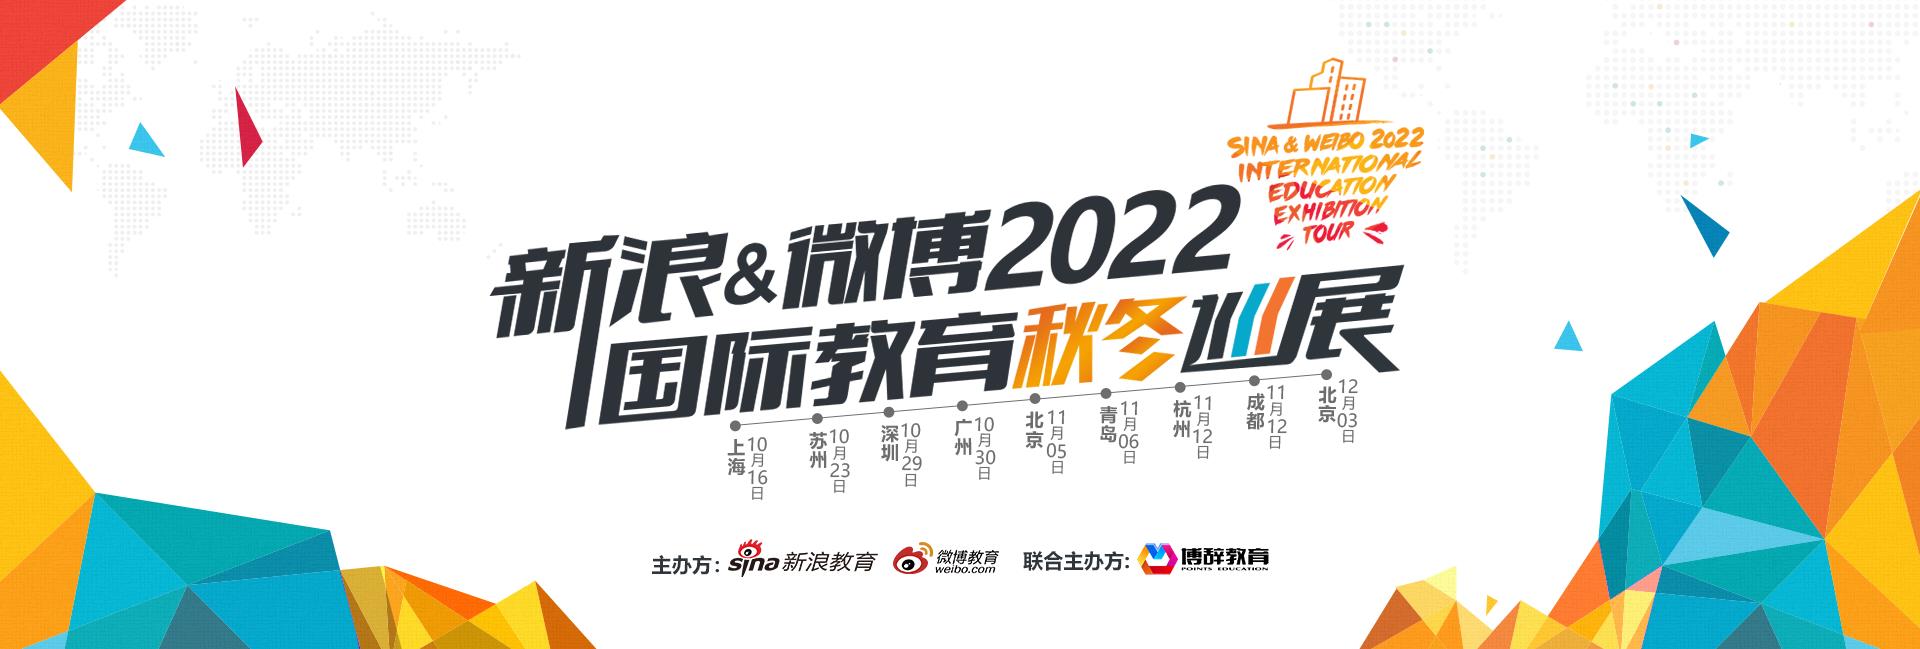 新浪&微博2022国际教育秋冬巡展